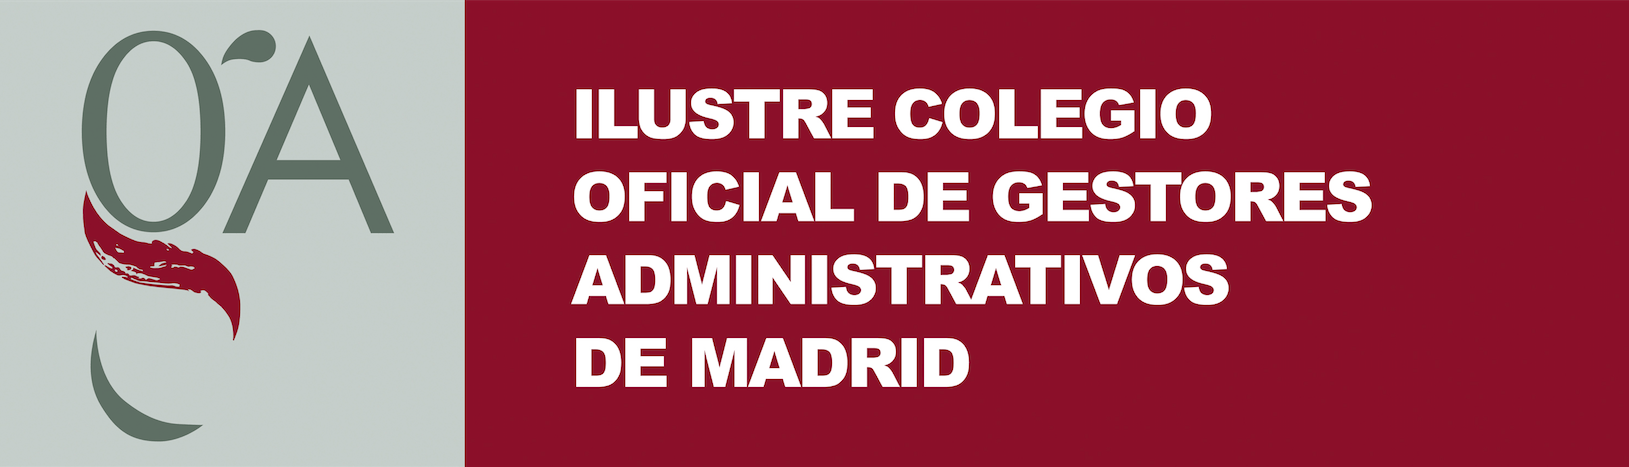 Administradores de fincas Madrid